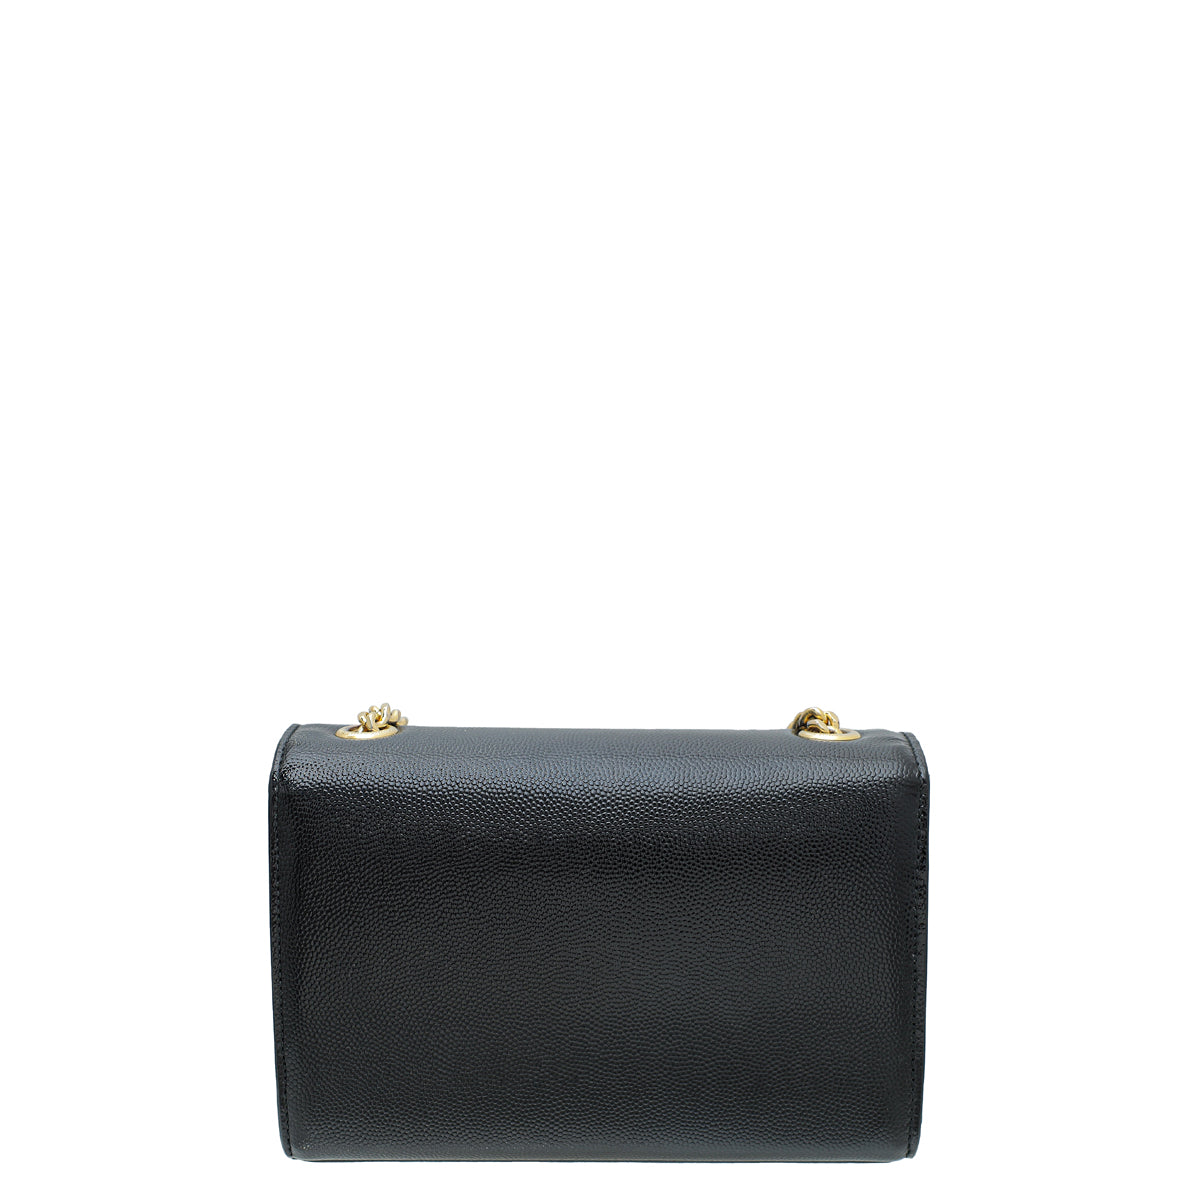 YSL Black Kate Mini Chain Bag